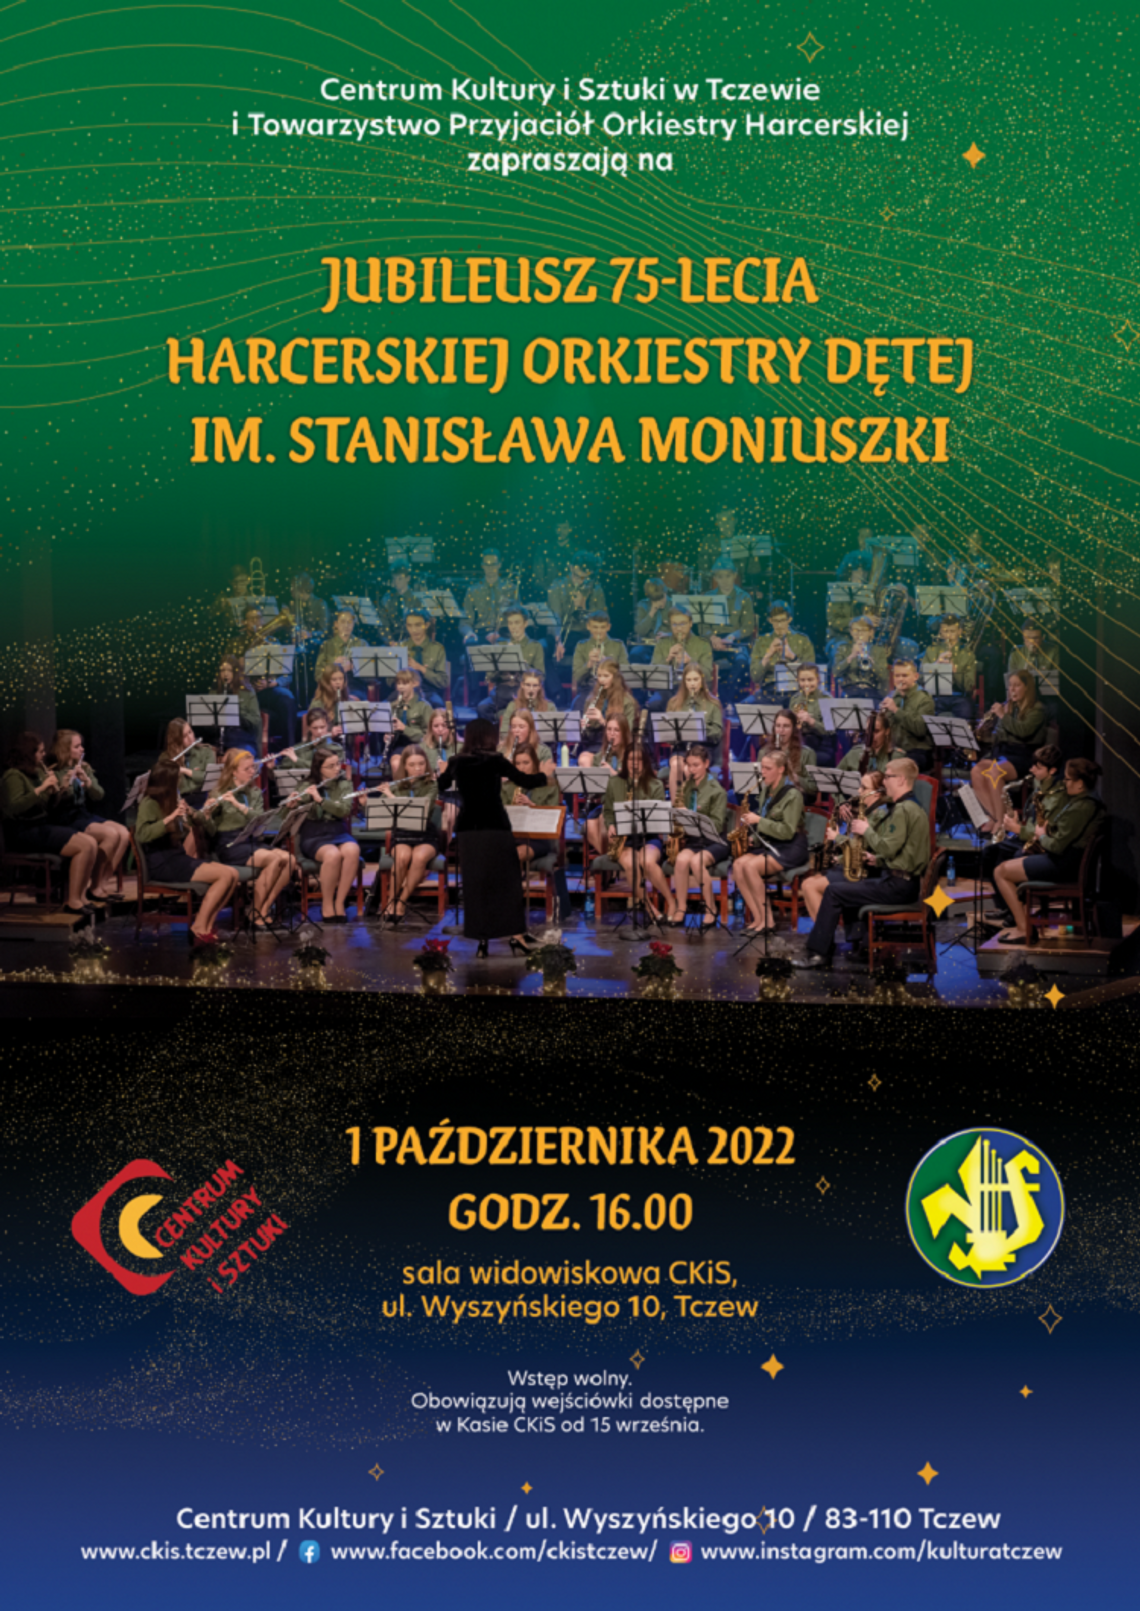 75 lat Harcerskiej Orkiestry Dętej! Jubileuszowy koncert 1 października